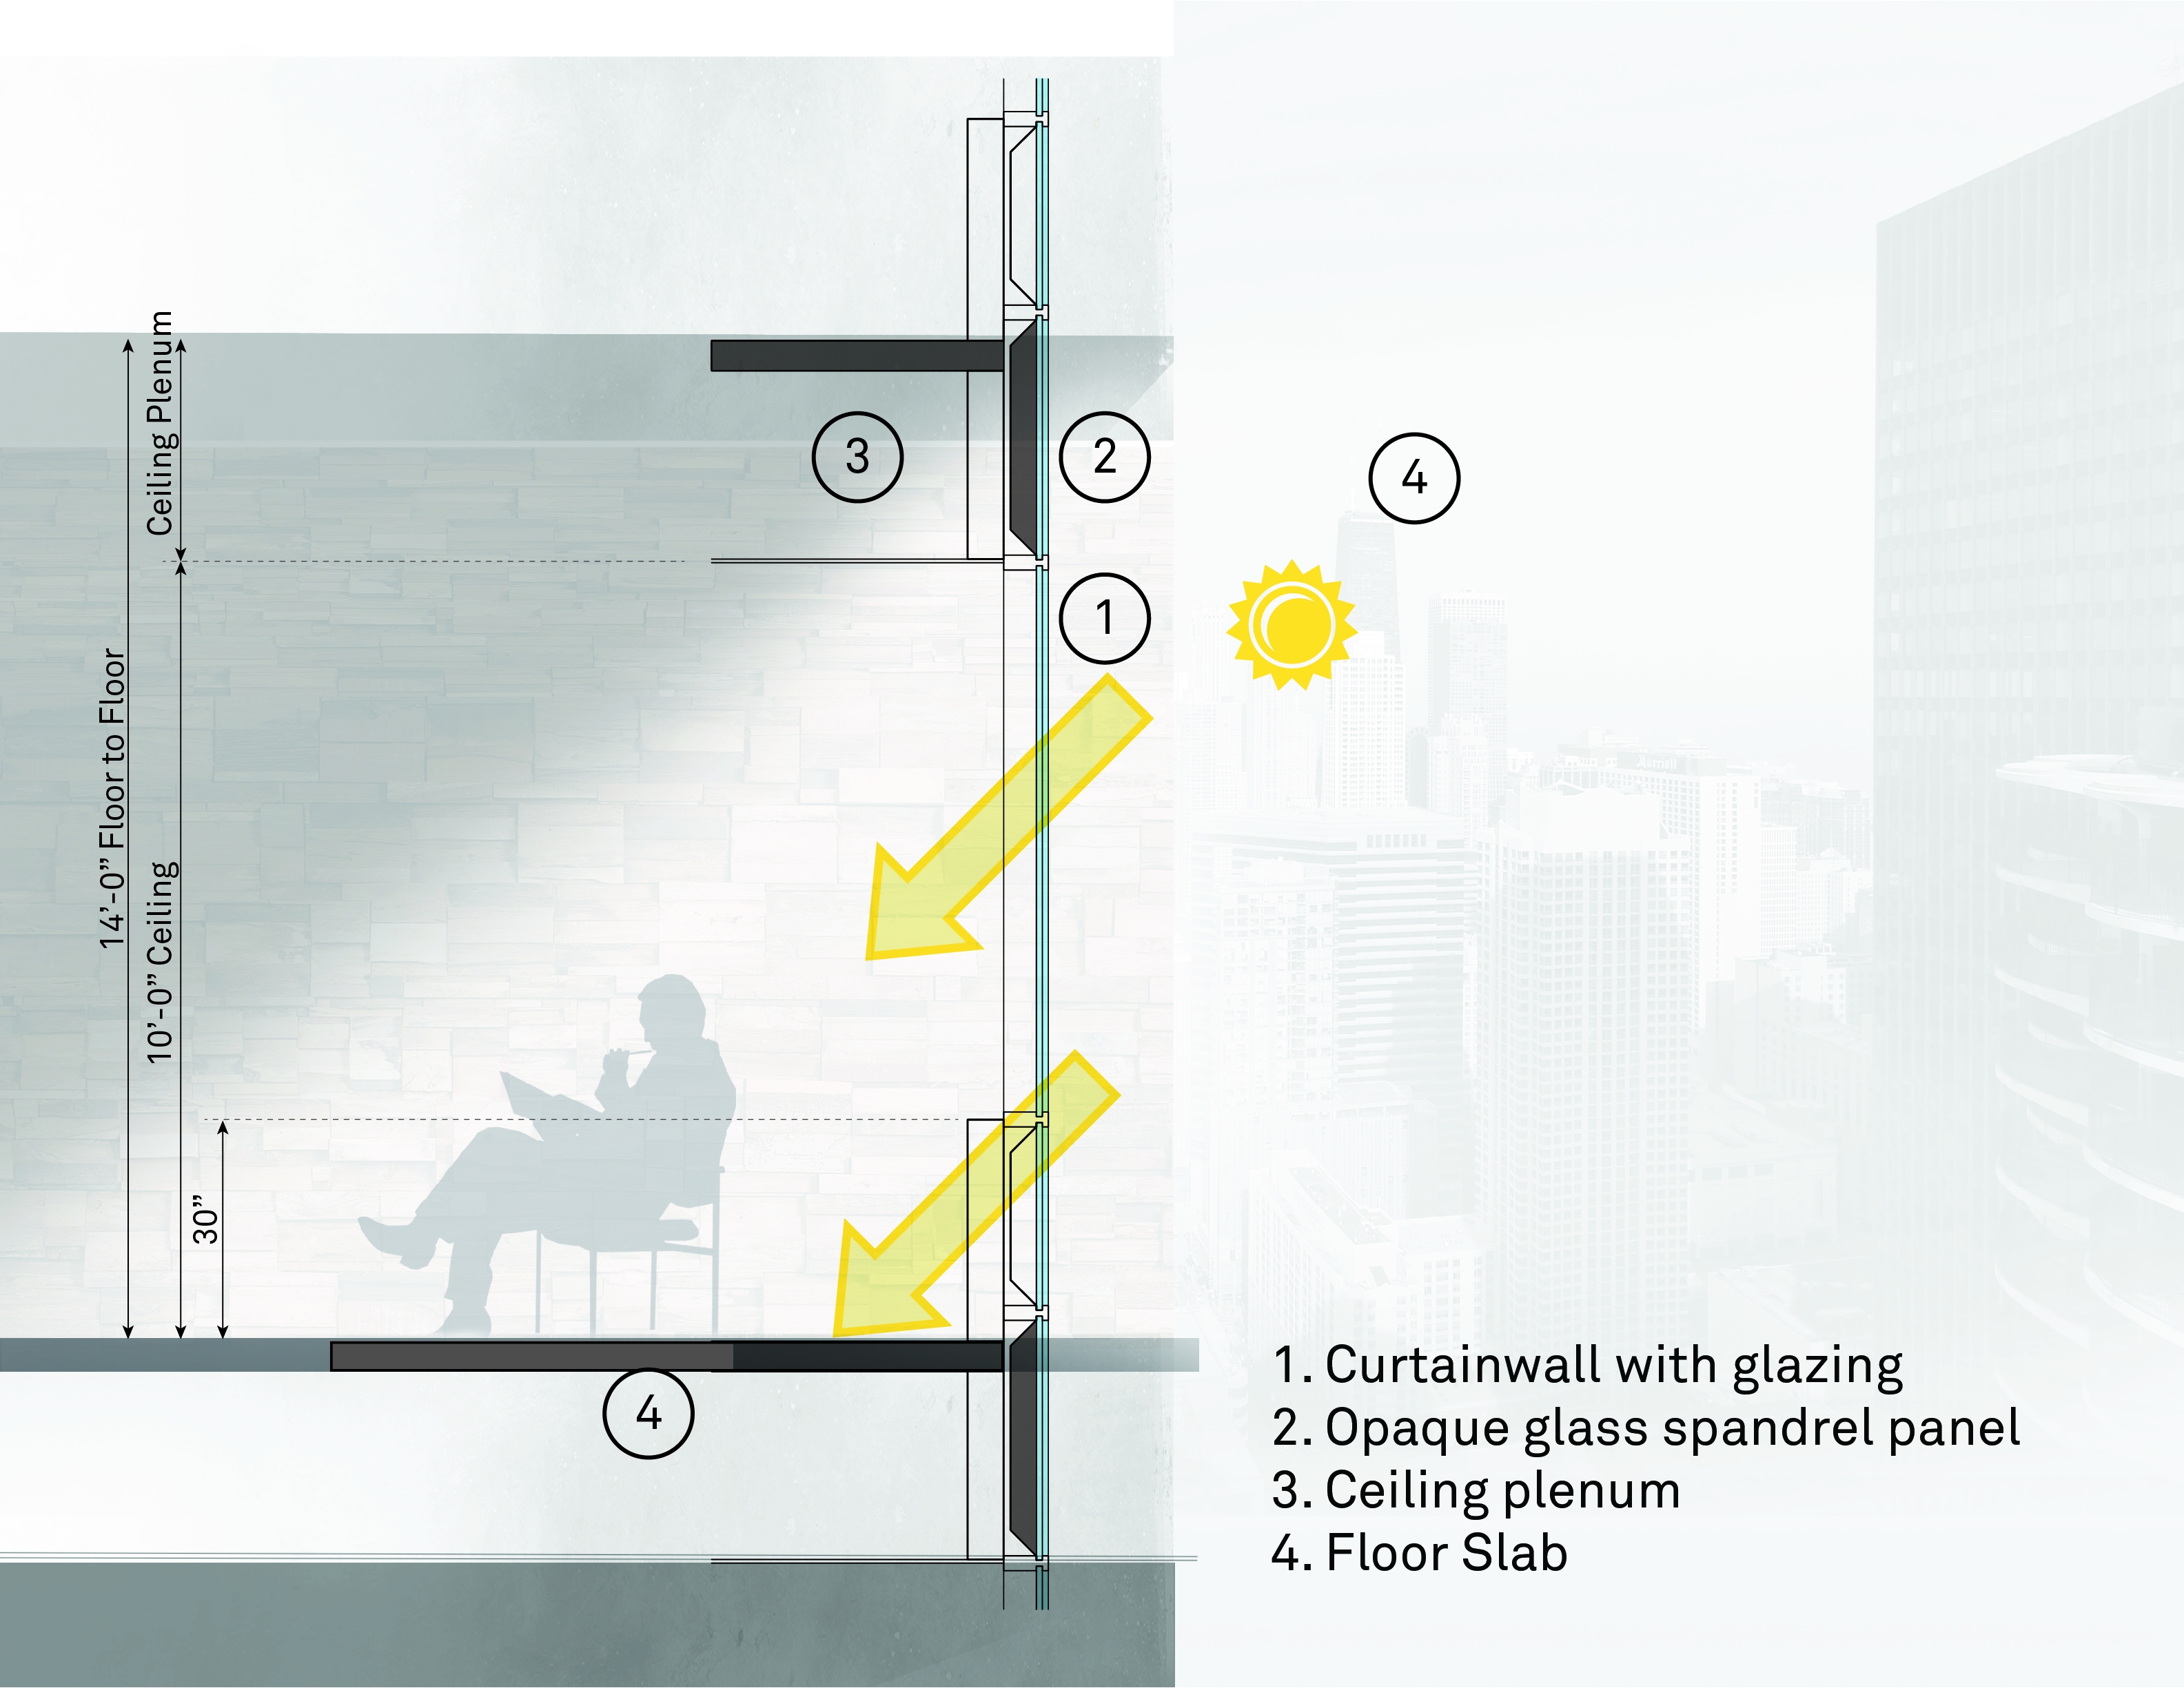 Glazing diagram for Glass Building design.